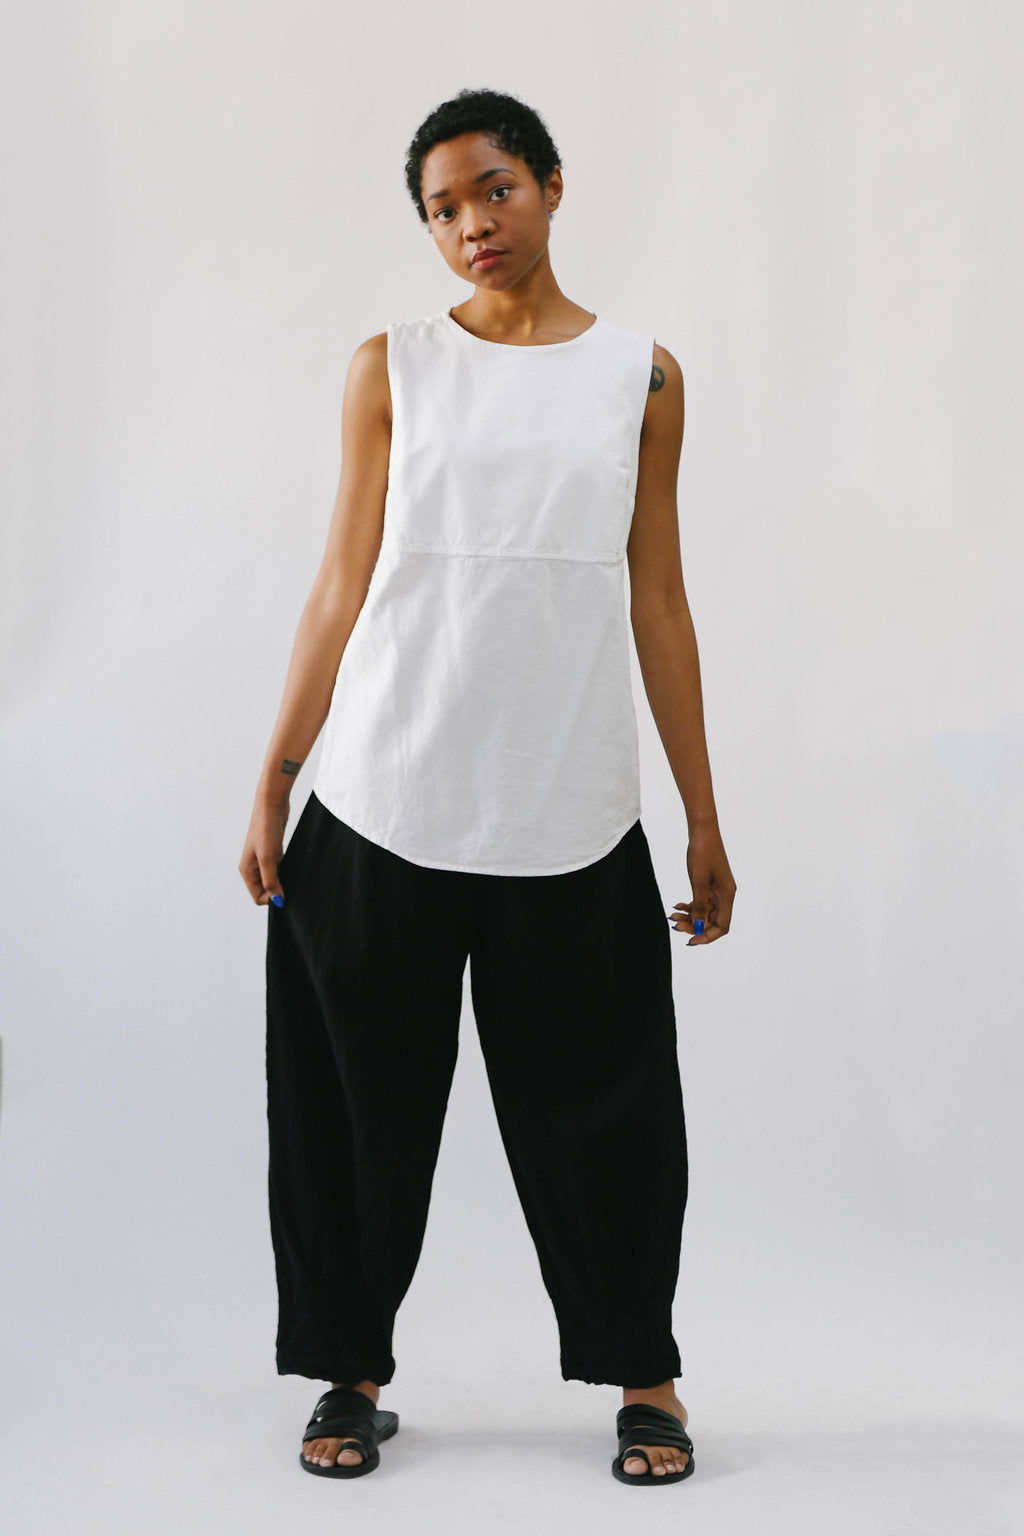 Simply Cotton-Marina Shirt